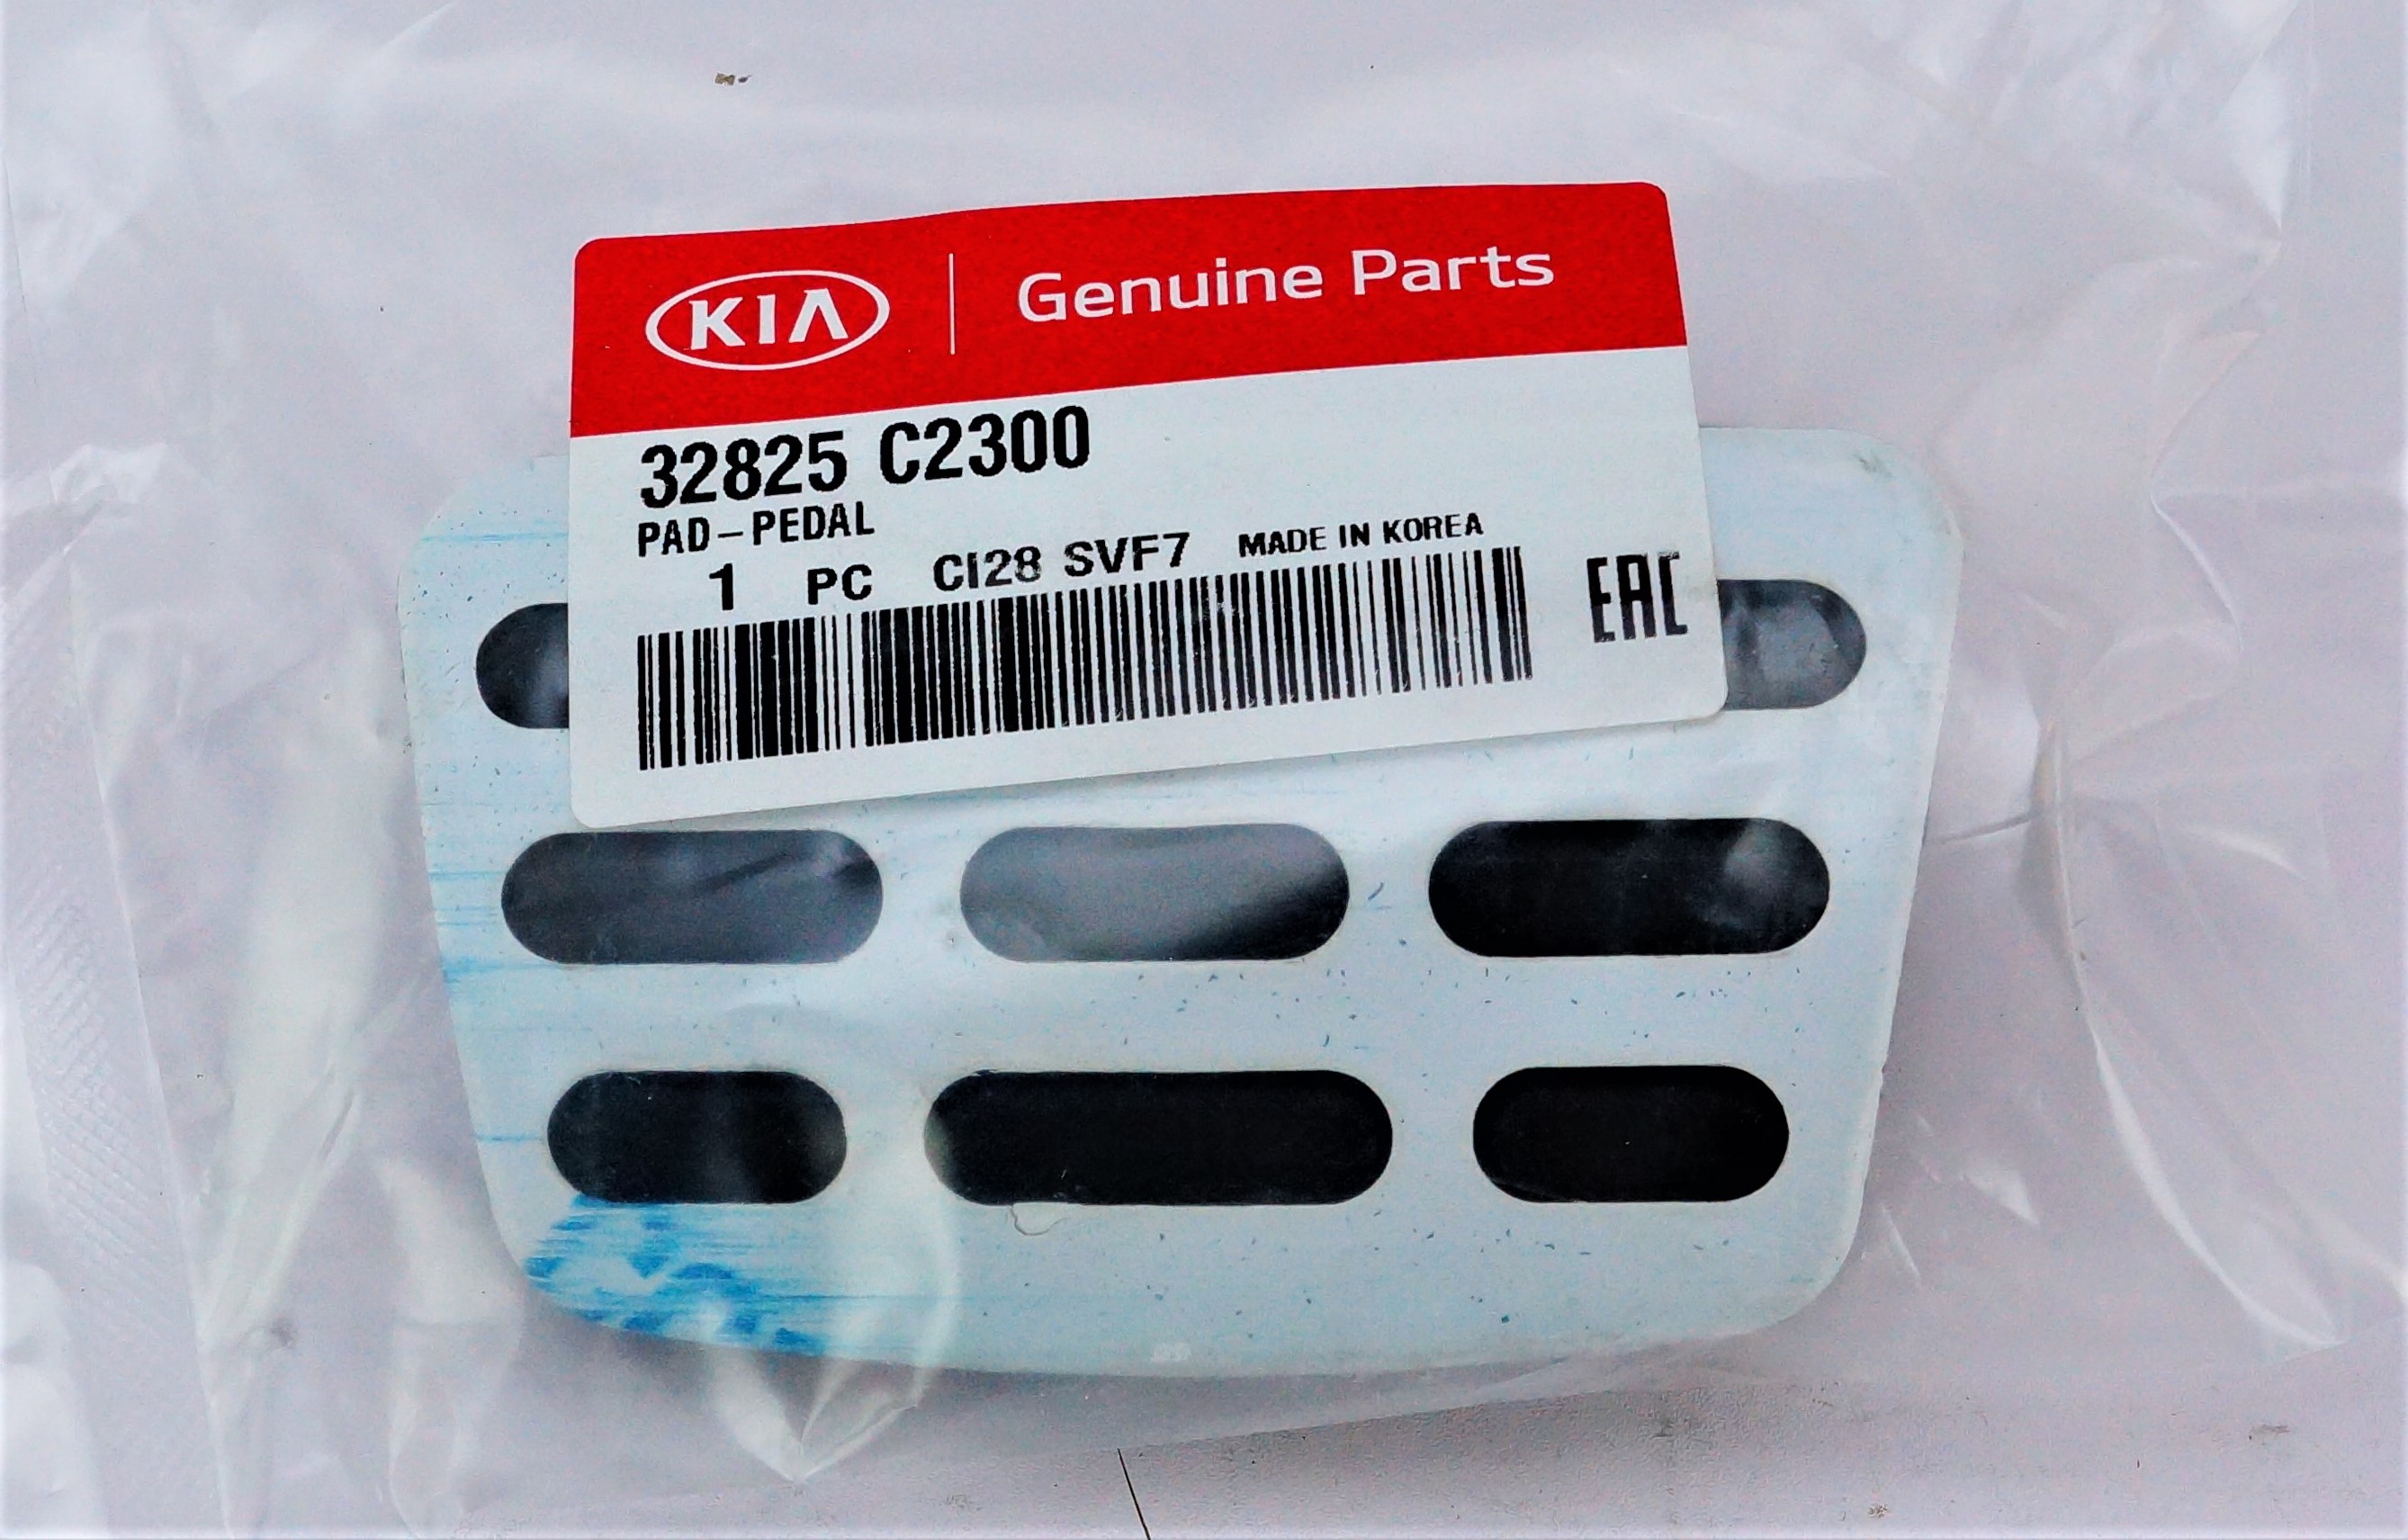 New Genuine OEM J5F05-AK000 18-21 Kia Stinger Sport Pedal Assembly Kit - image 6